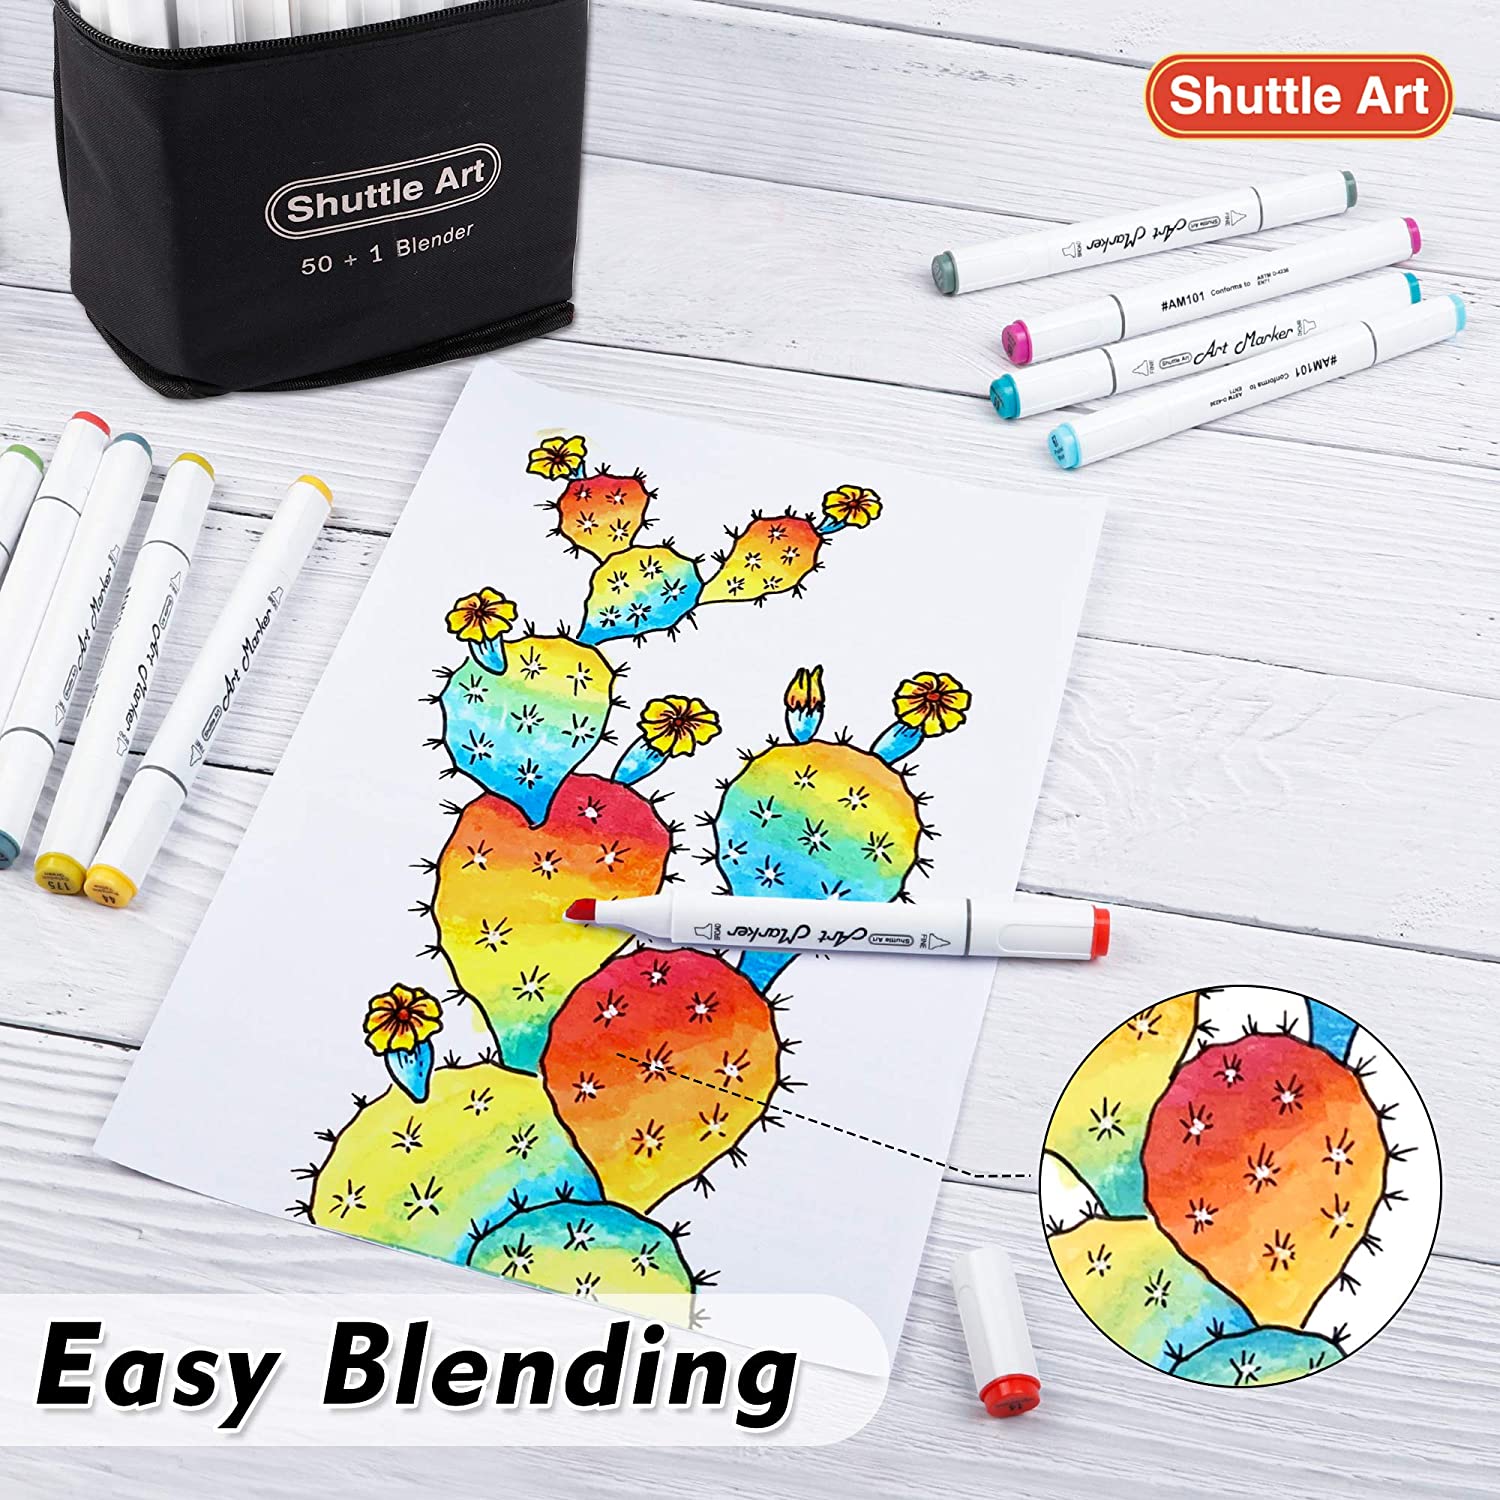 Shuttle Art Rotuladores de doble punta, marcadores artísticos, 30 colores,  bolígrafos de caligrafía de doble punta fina y brocha, perfecto para niños